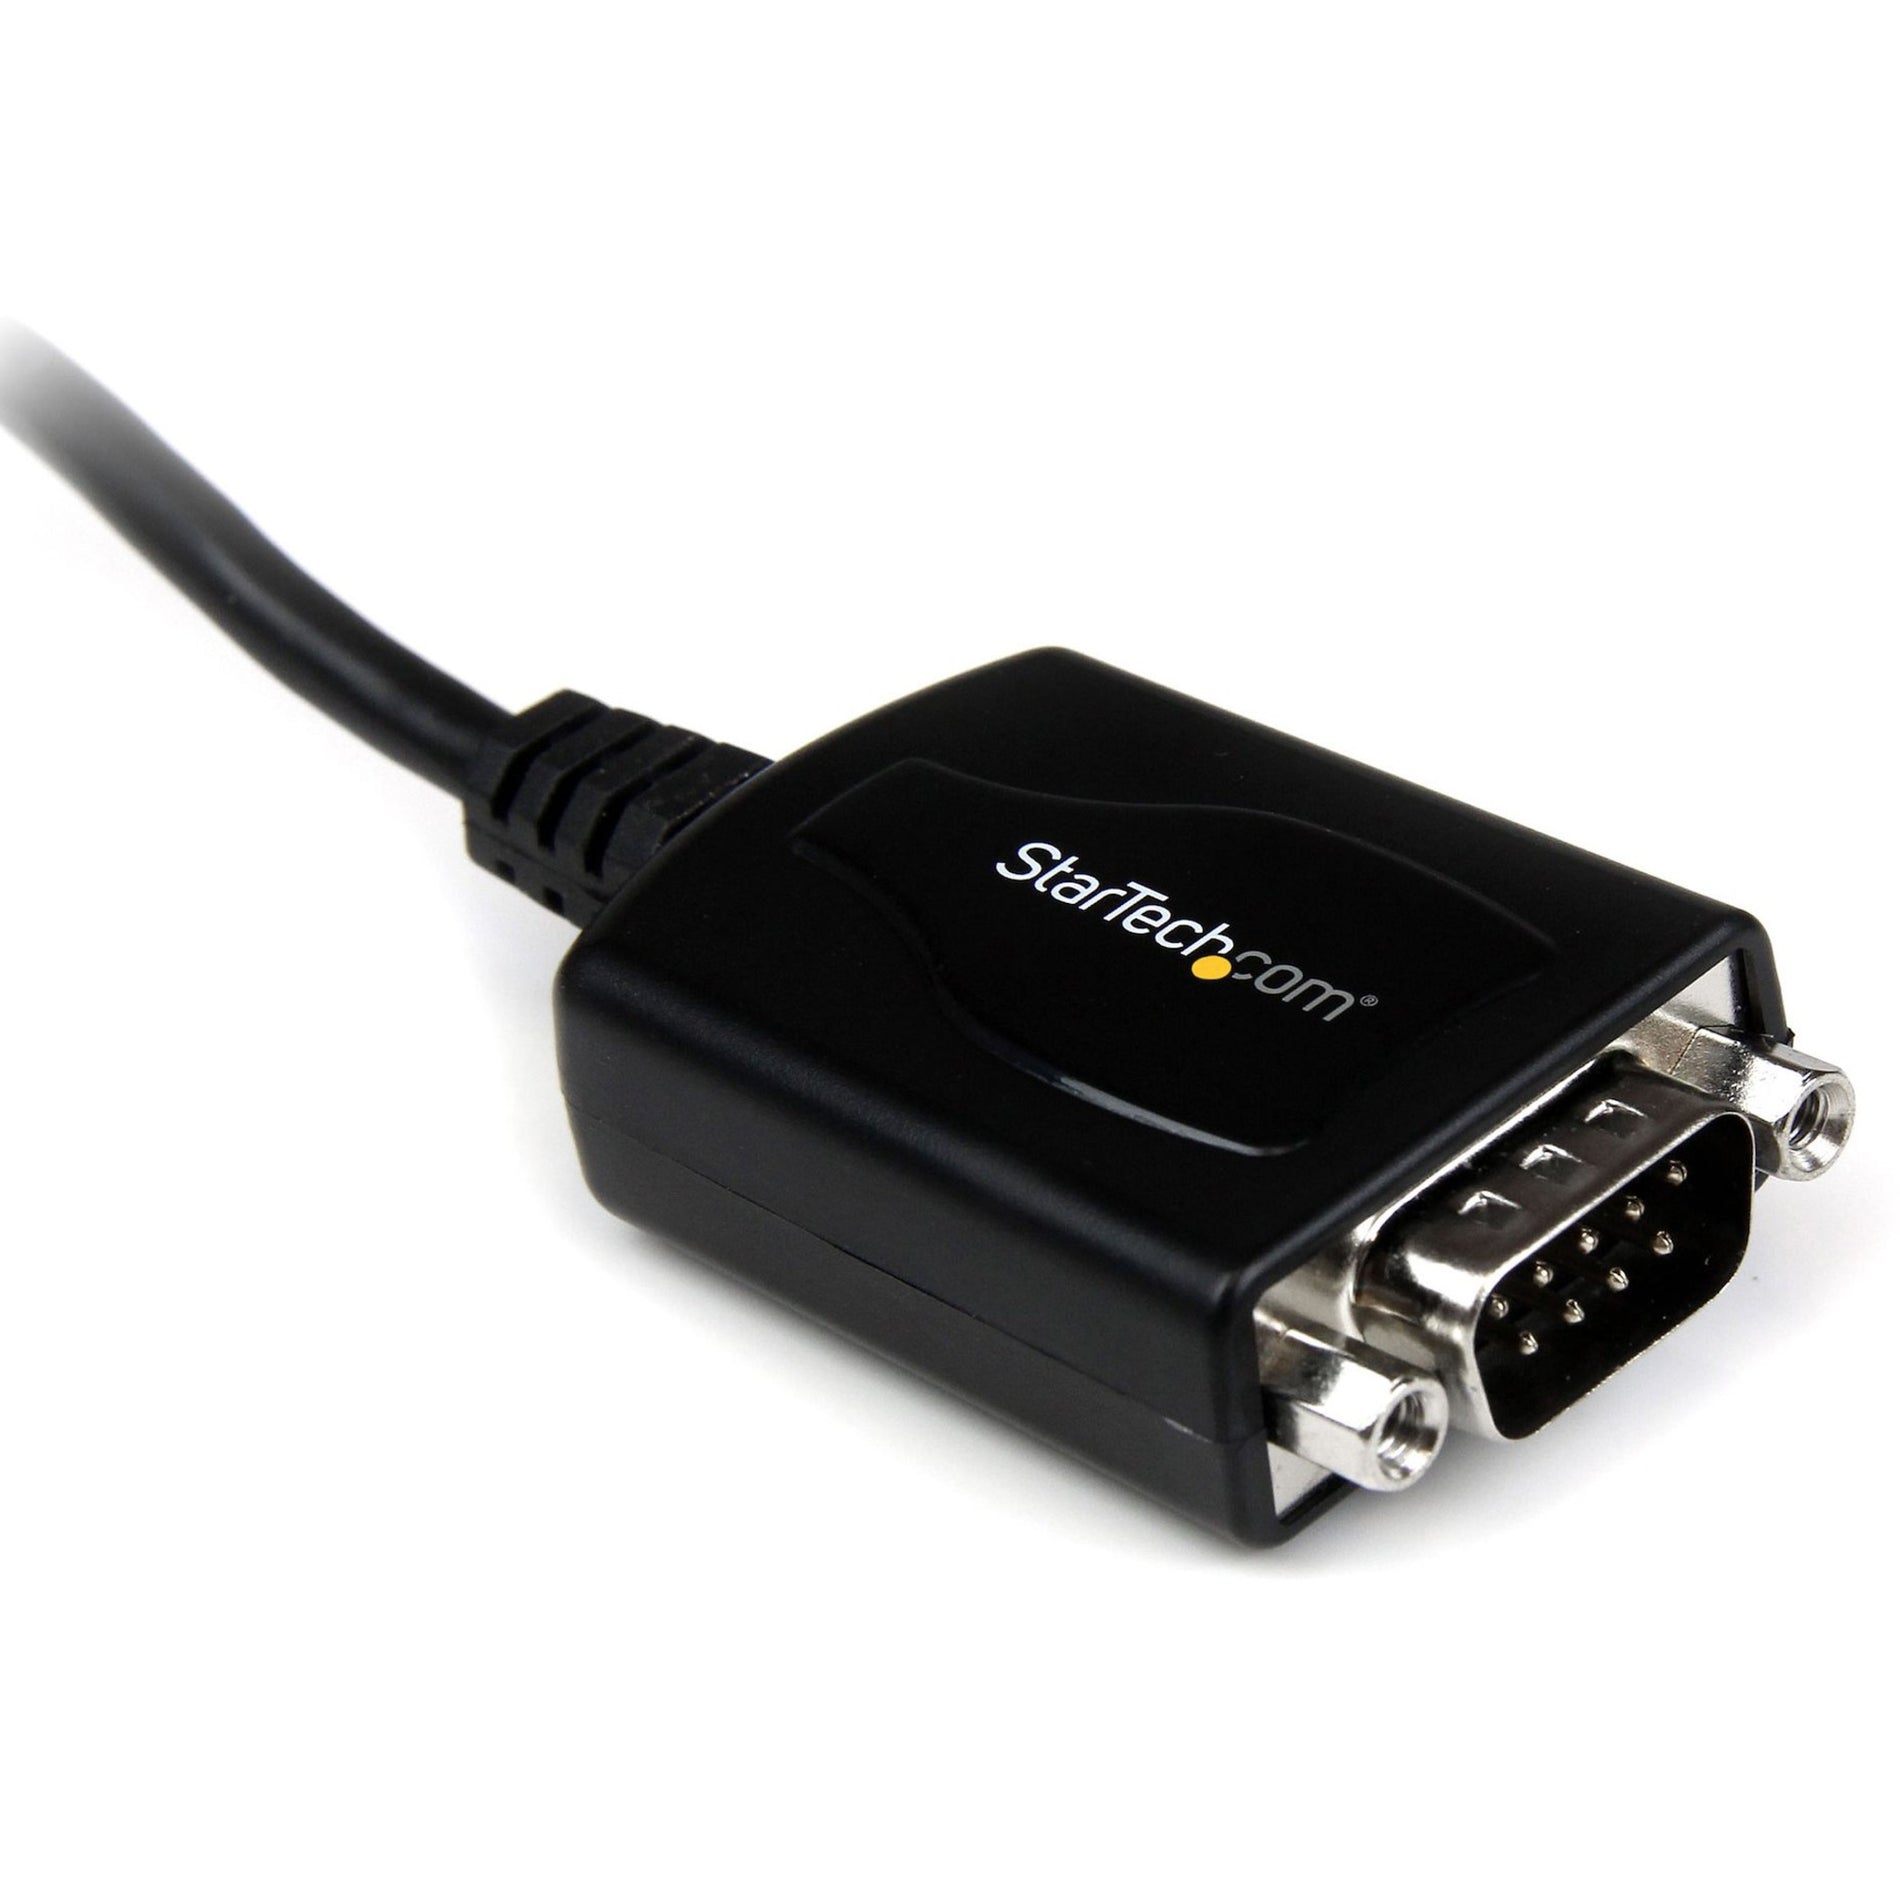 StarTech.com ICUSB232PRO USB auf Seriell Adapter Kabel mit COM-Speicherung 1 ft Schwarz